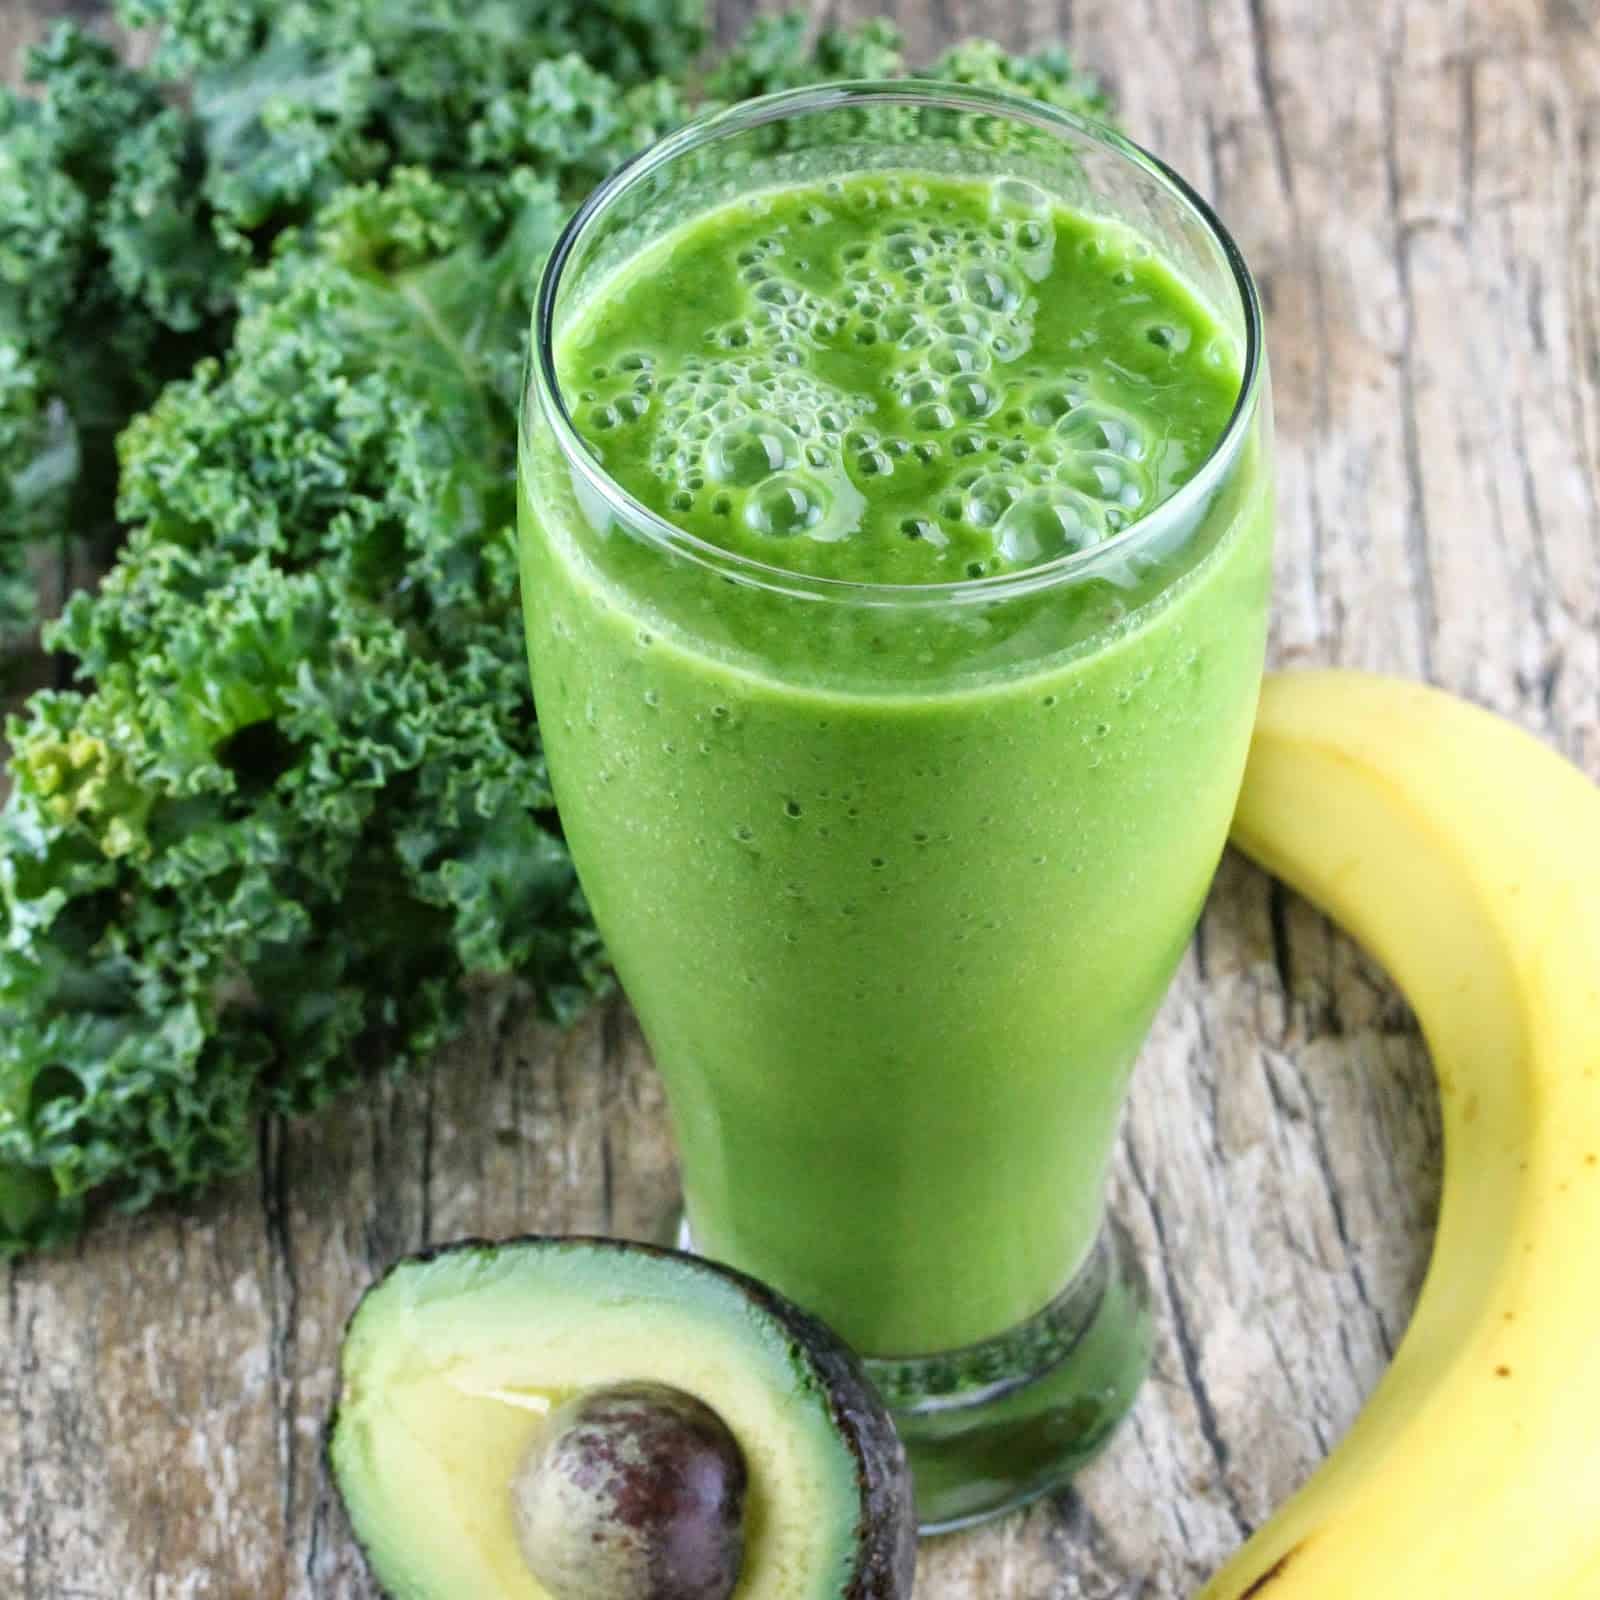 Kale-Avocado-Banana Green Smoothie